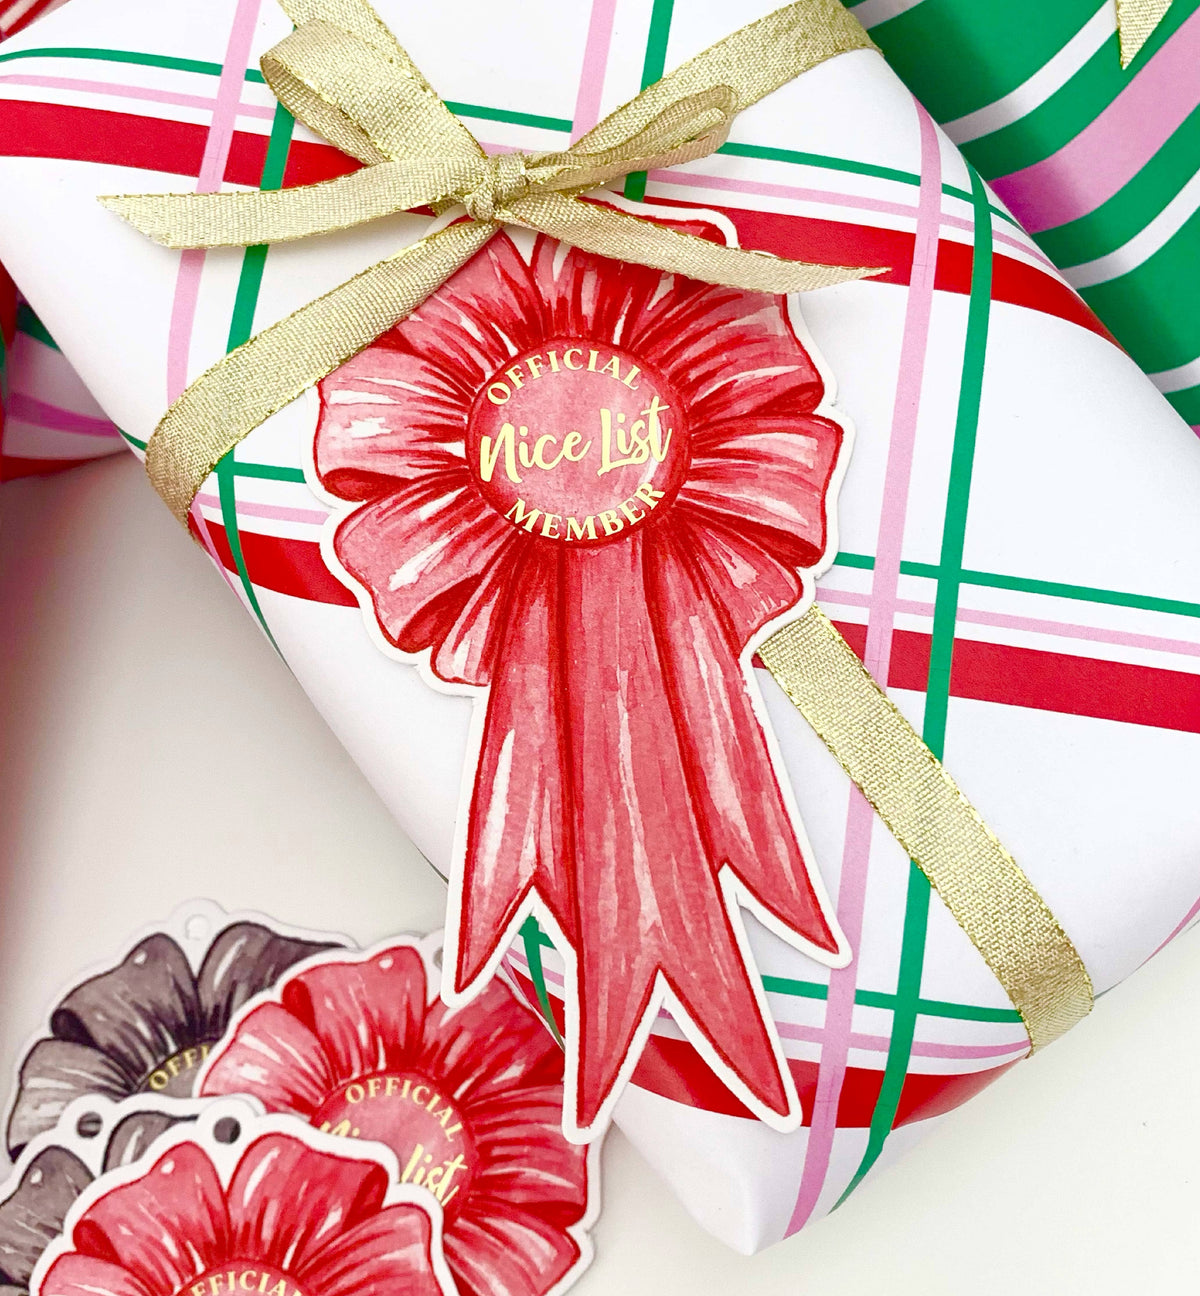 Nice List Member Rosette Christmas Gift Tags - Set of 6